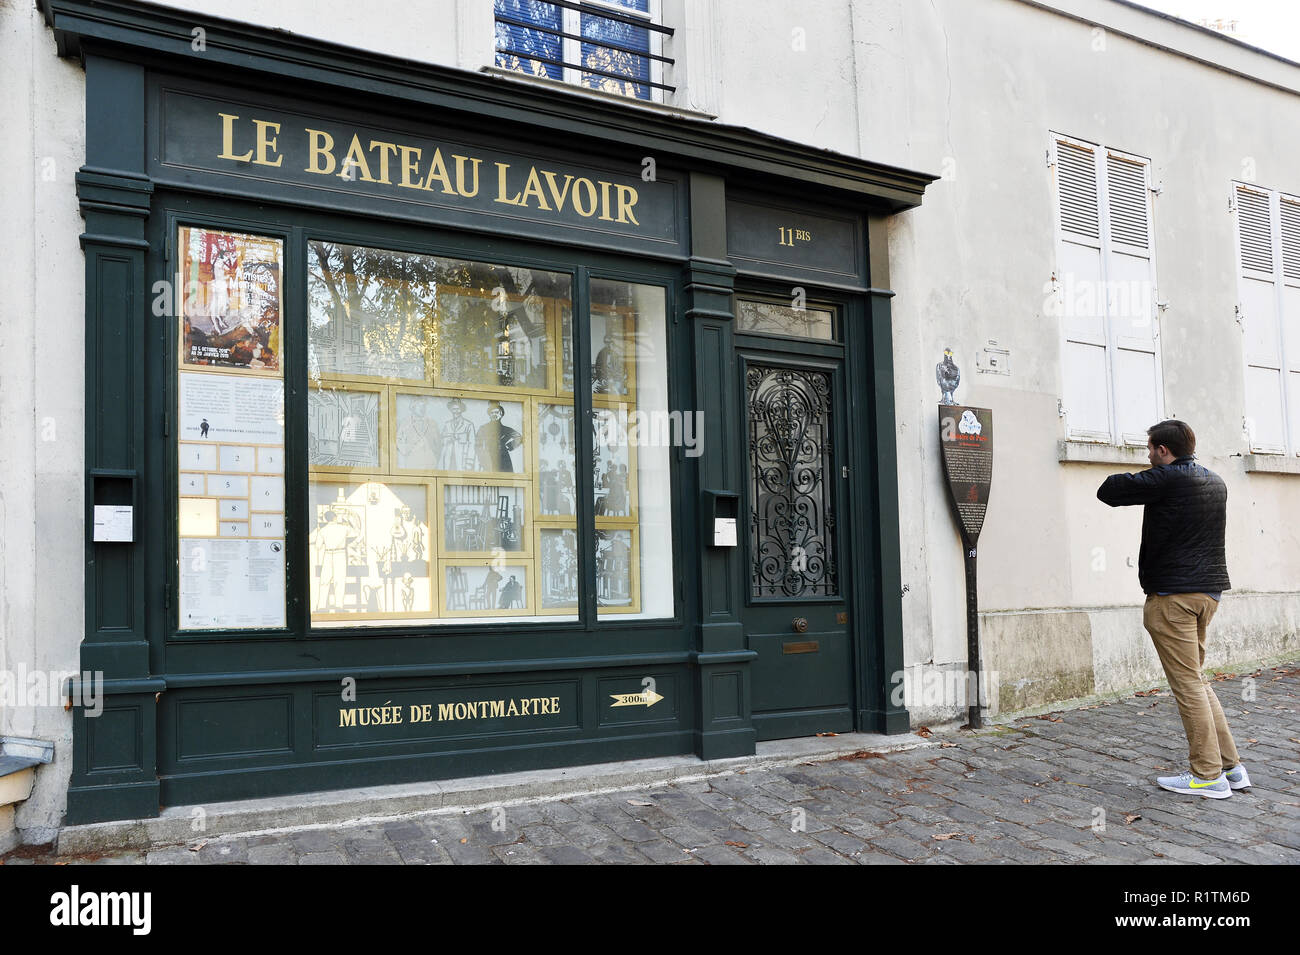 Le Bateau Lavoir - Montmartre - Paris - France Banque D'Images